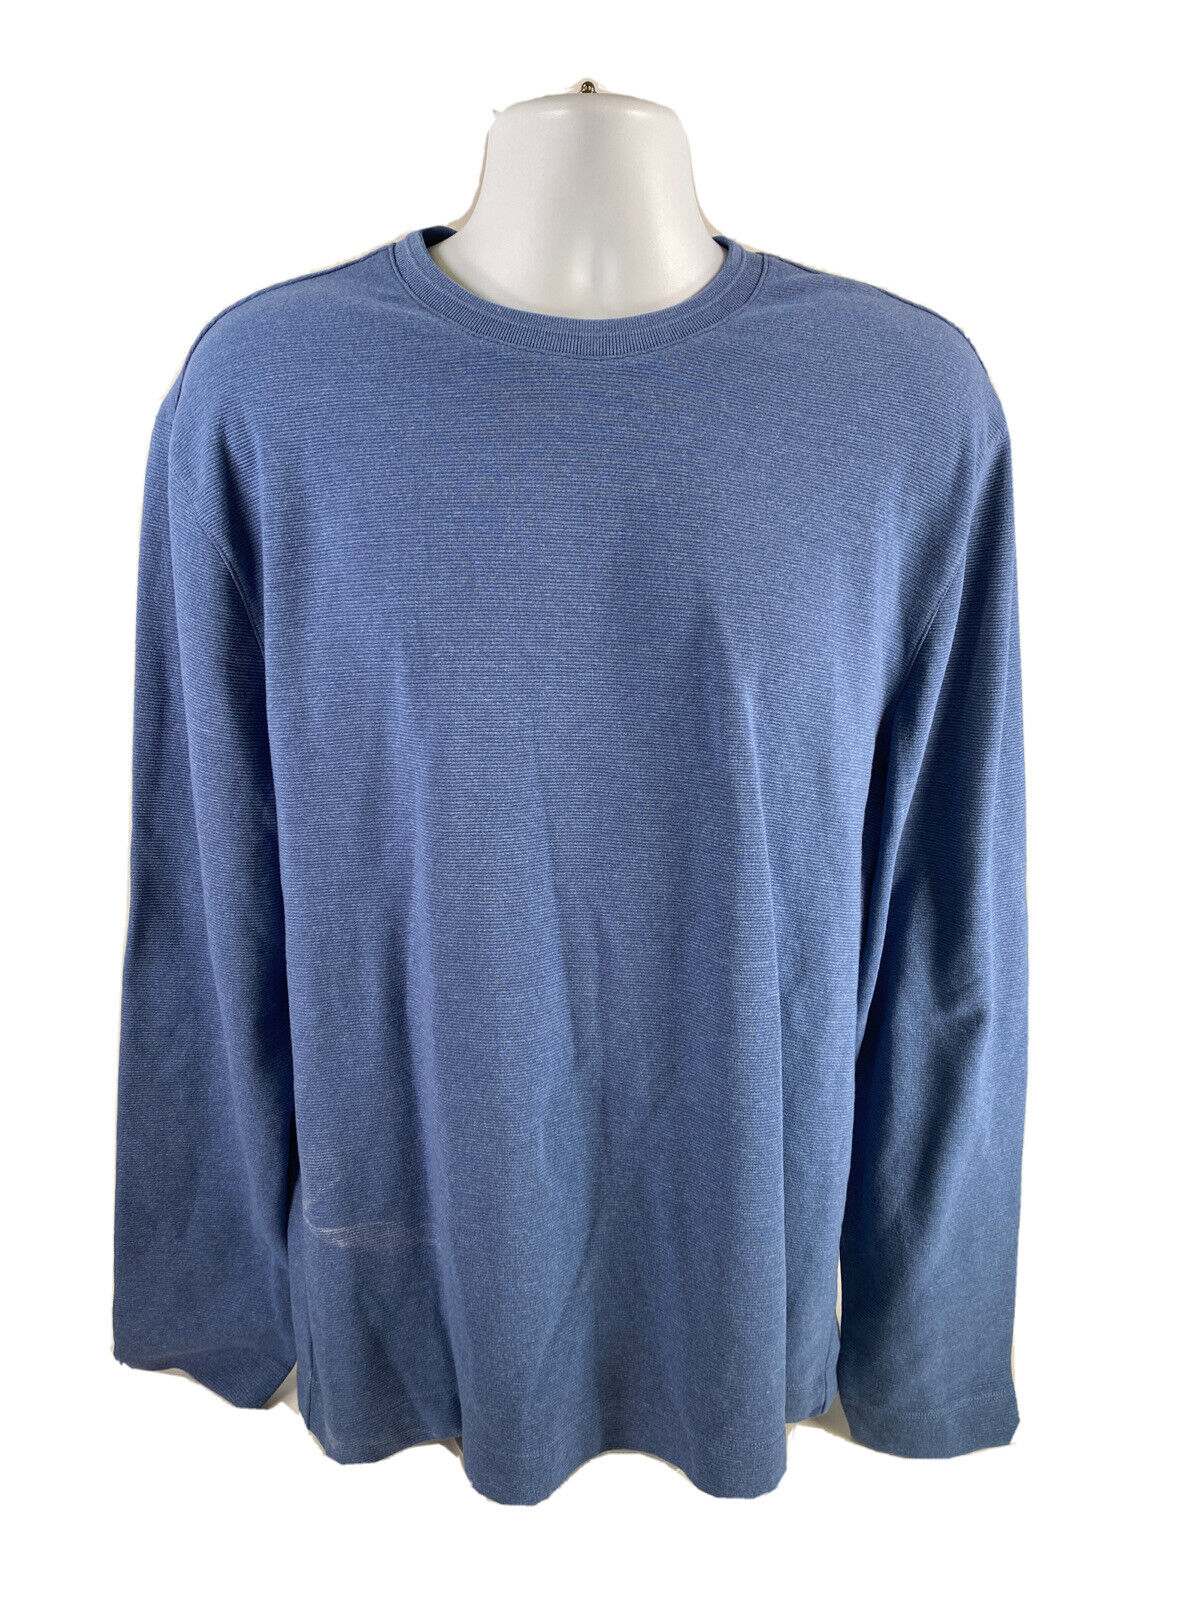 NEW Van Heusen Men's Blue Regular Fit Long Sleeve Ottoman T-Shirt - L